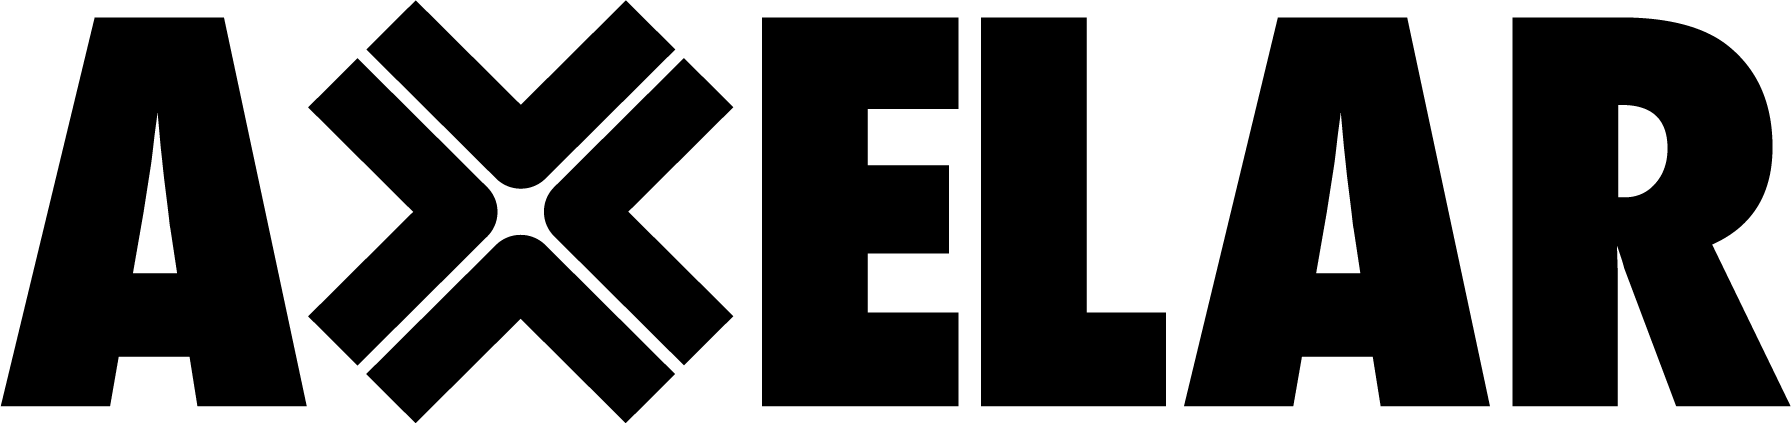 Axelar Logo